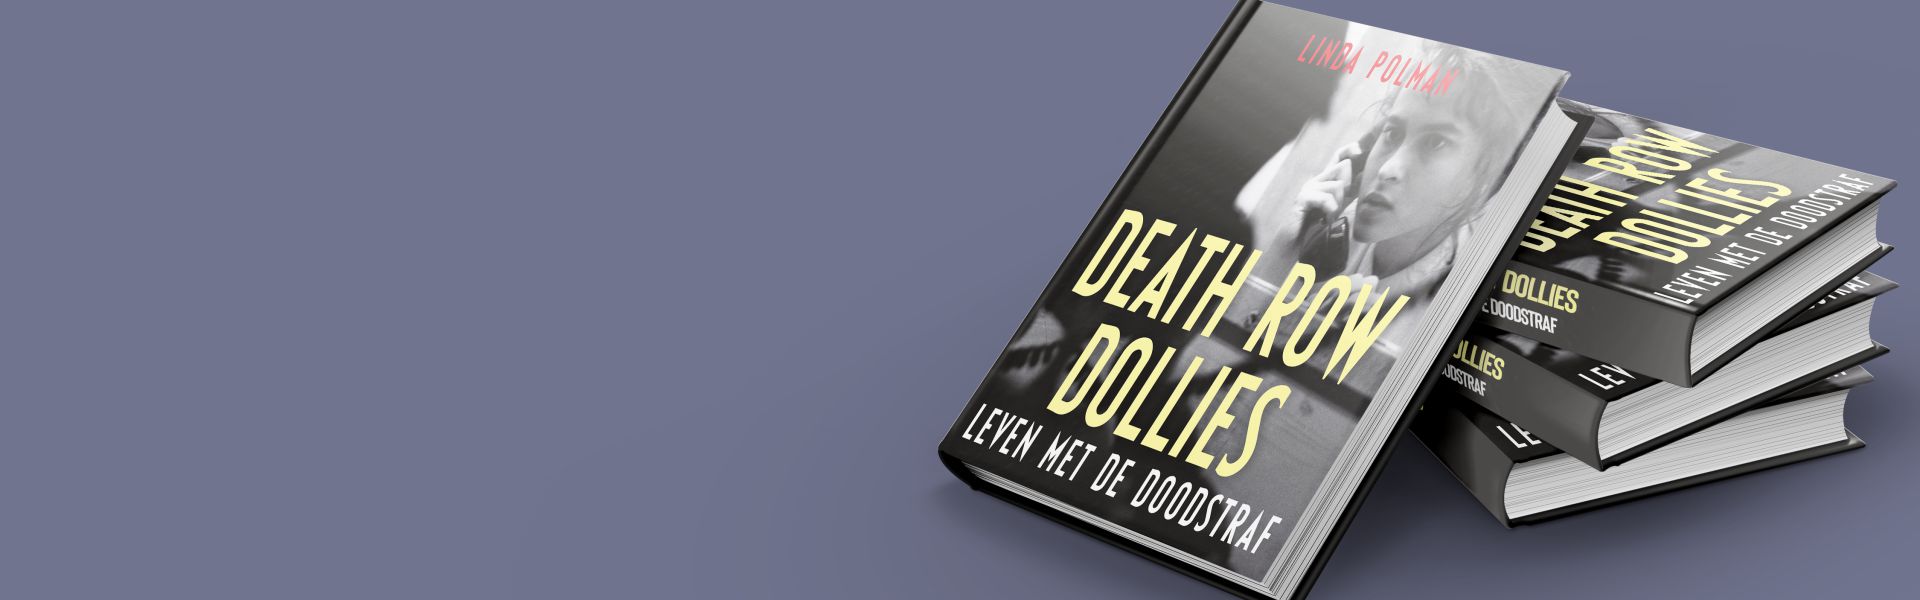 Death row Dollies: leven met de doodstraf